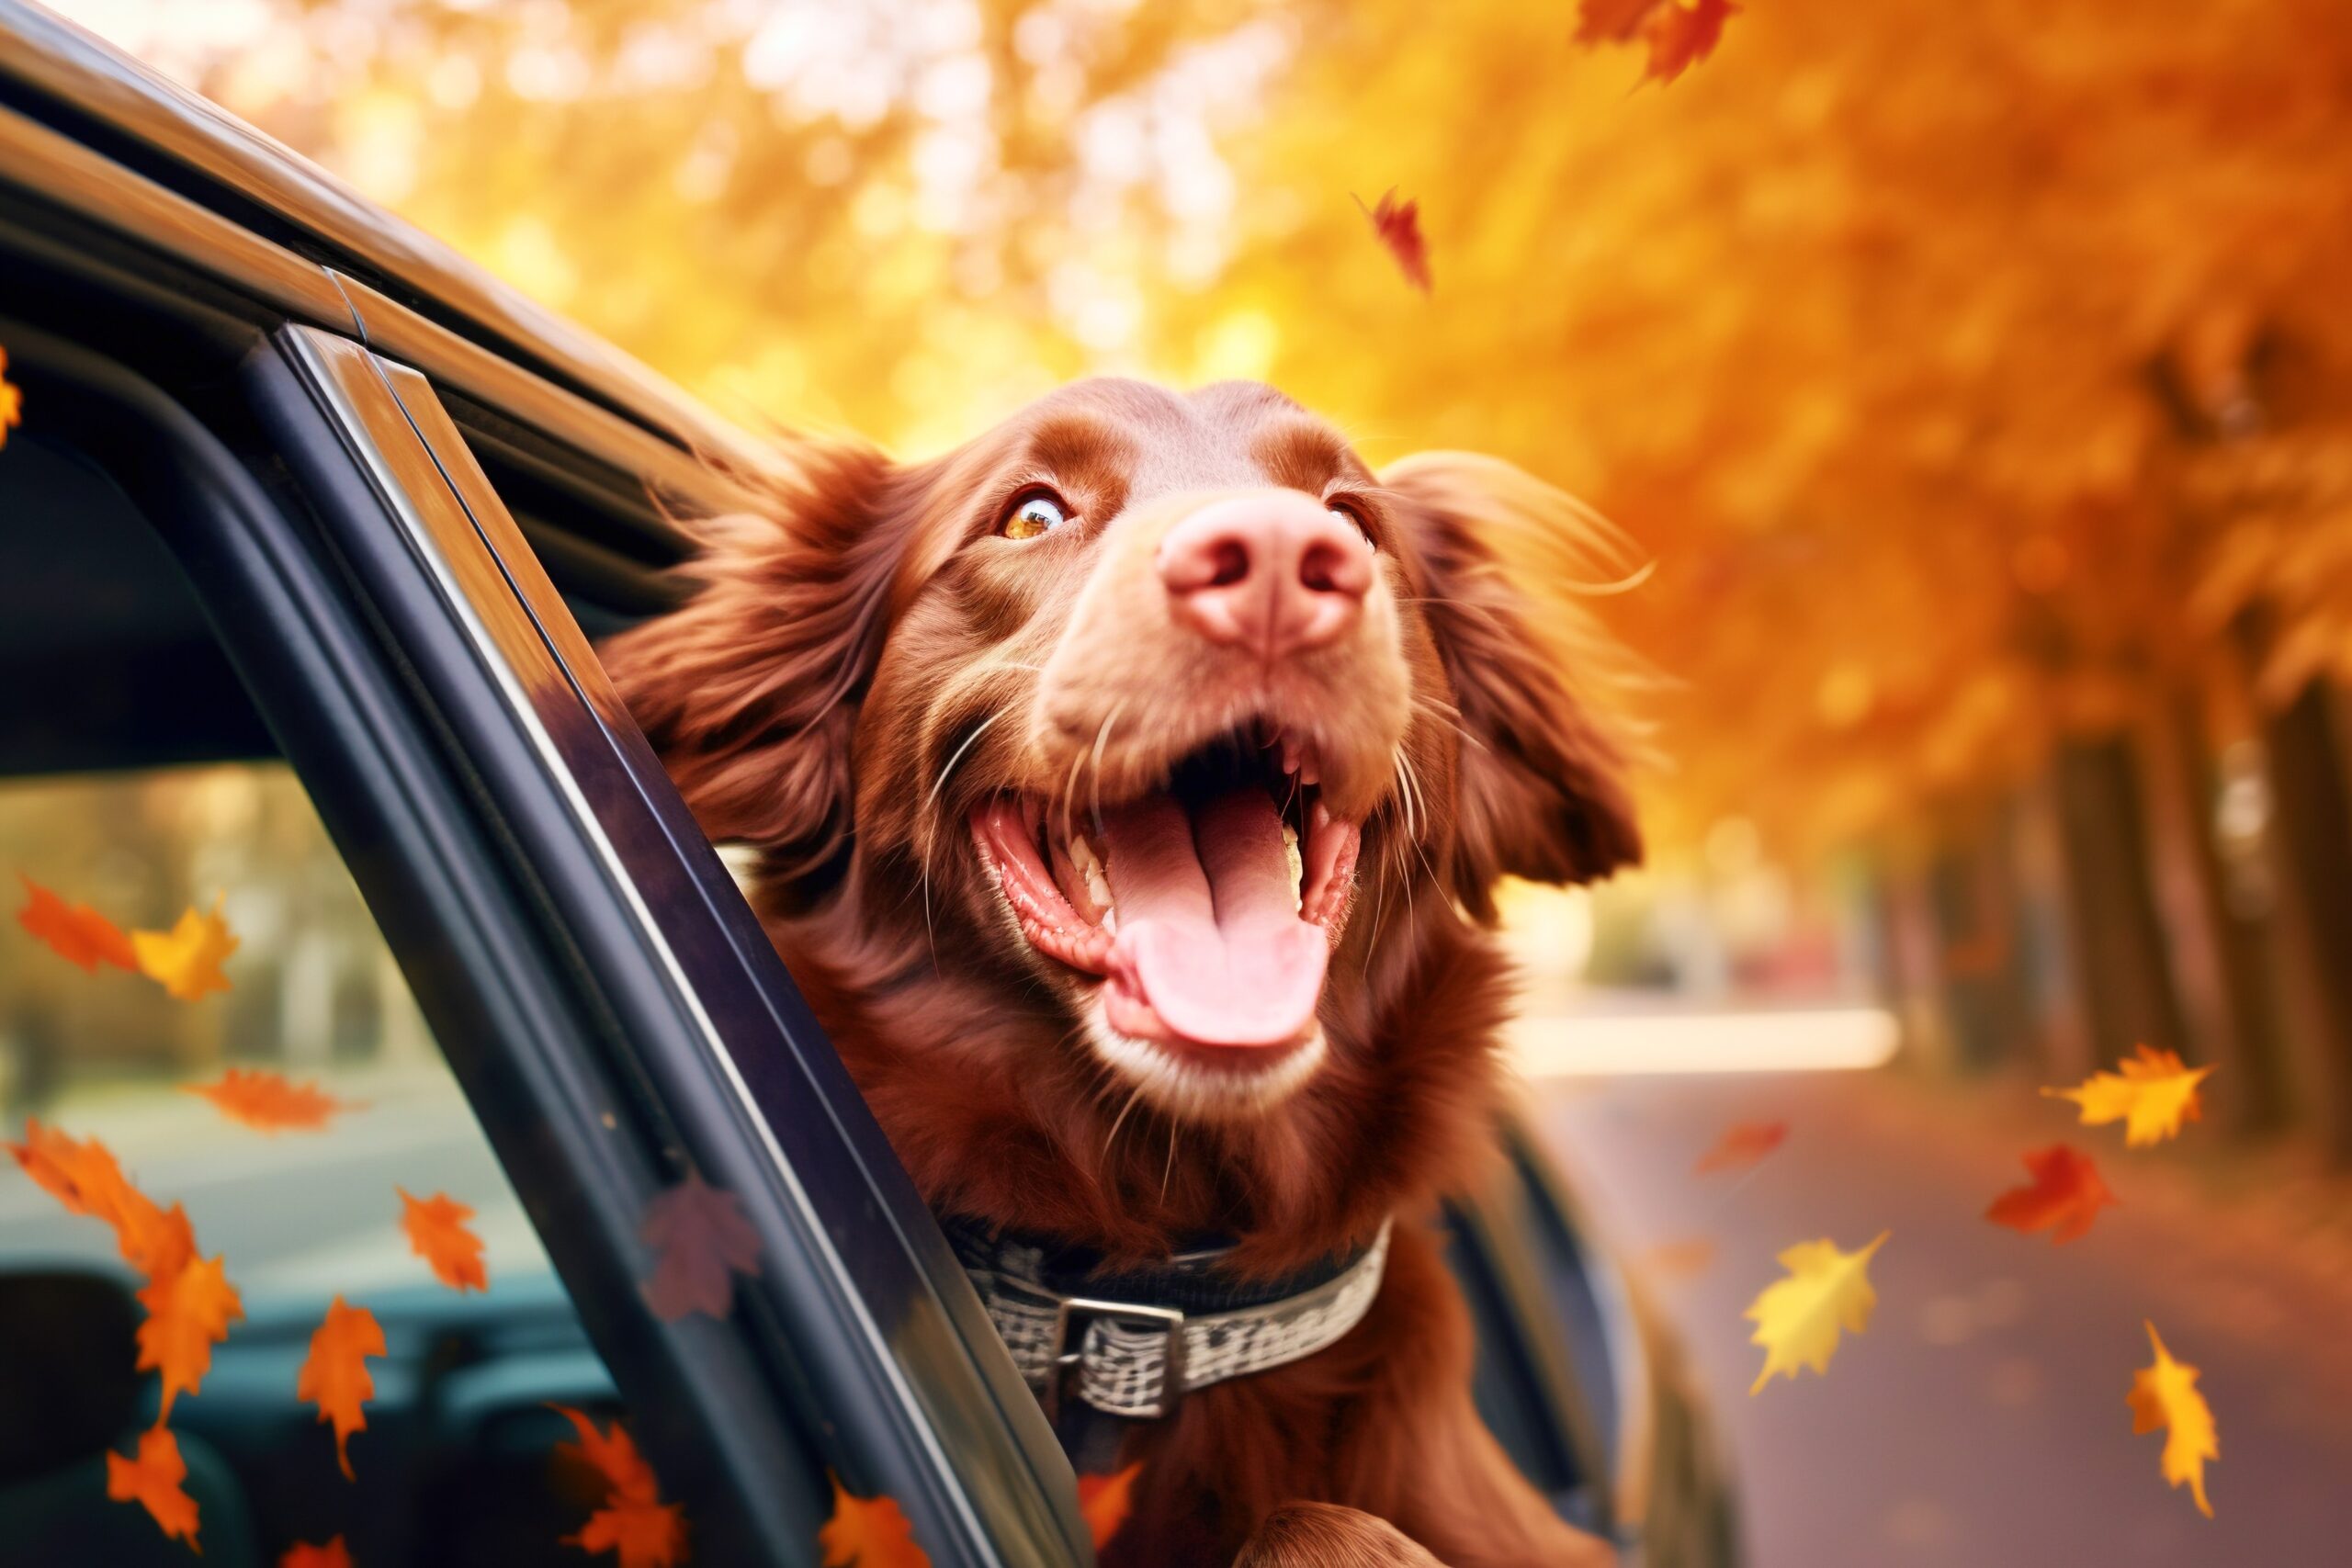 <img src="happy dog.jpg" alt="happy dog in car window "/>